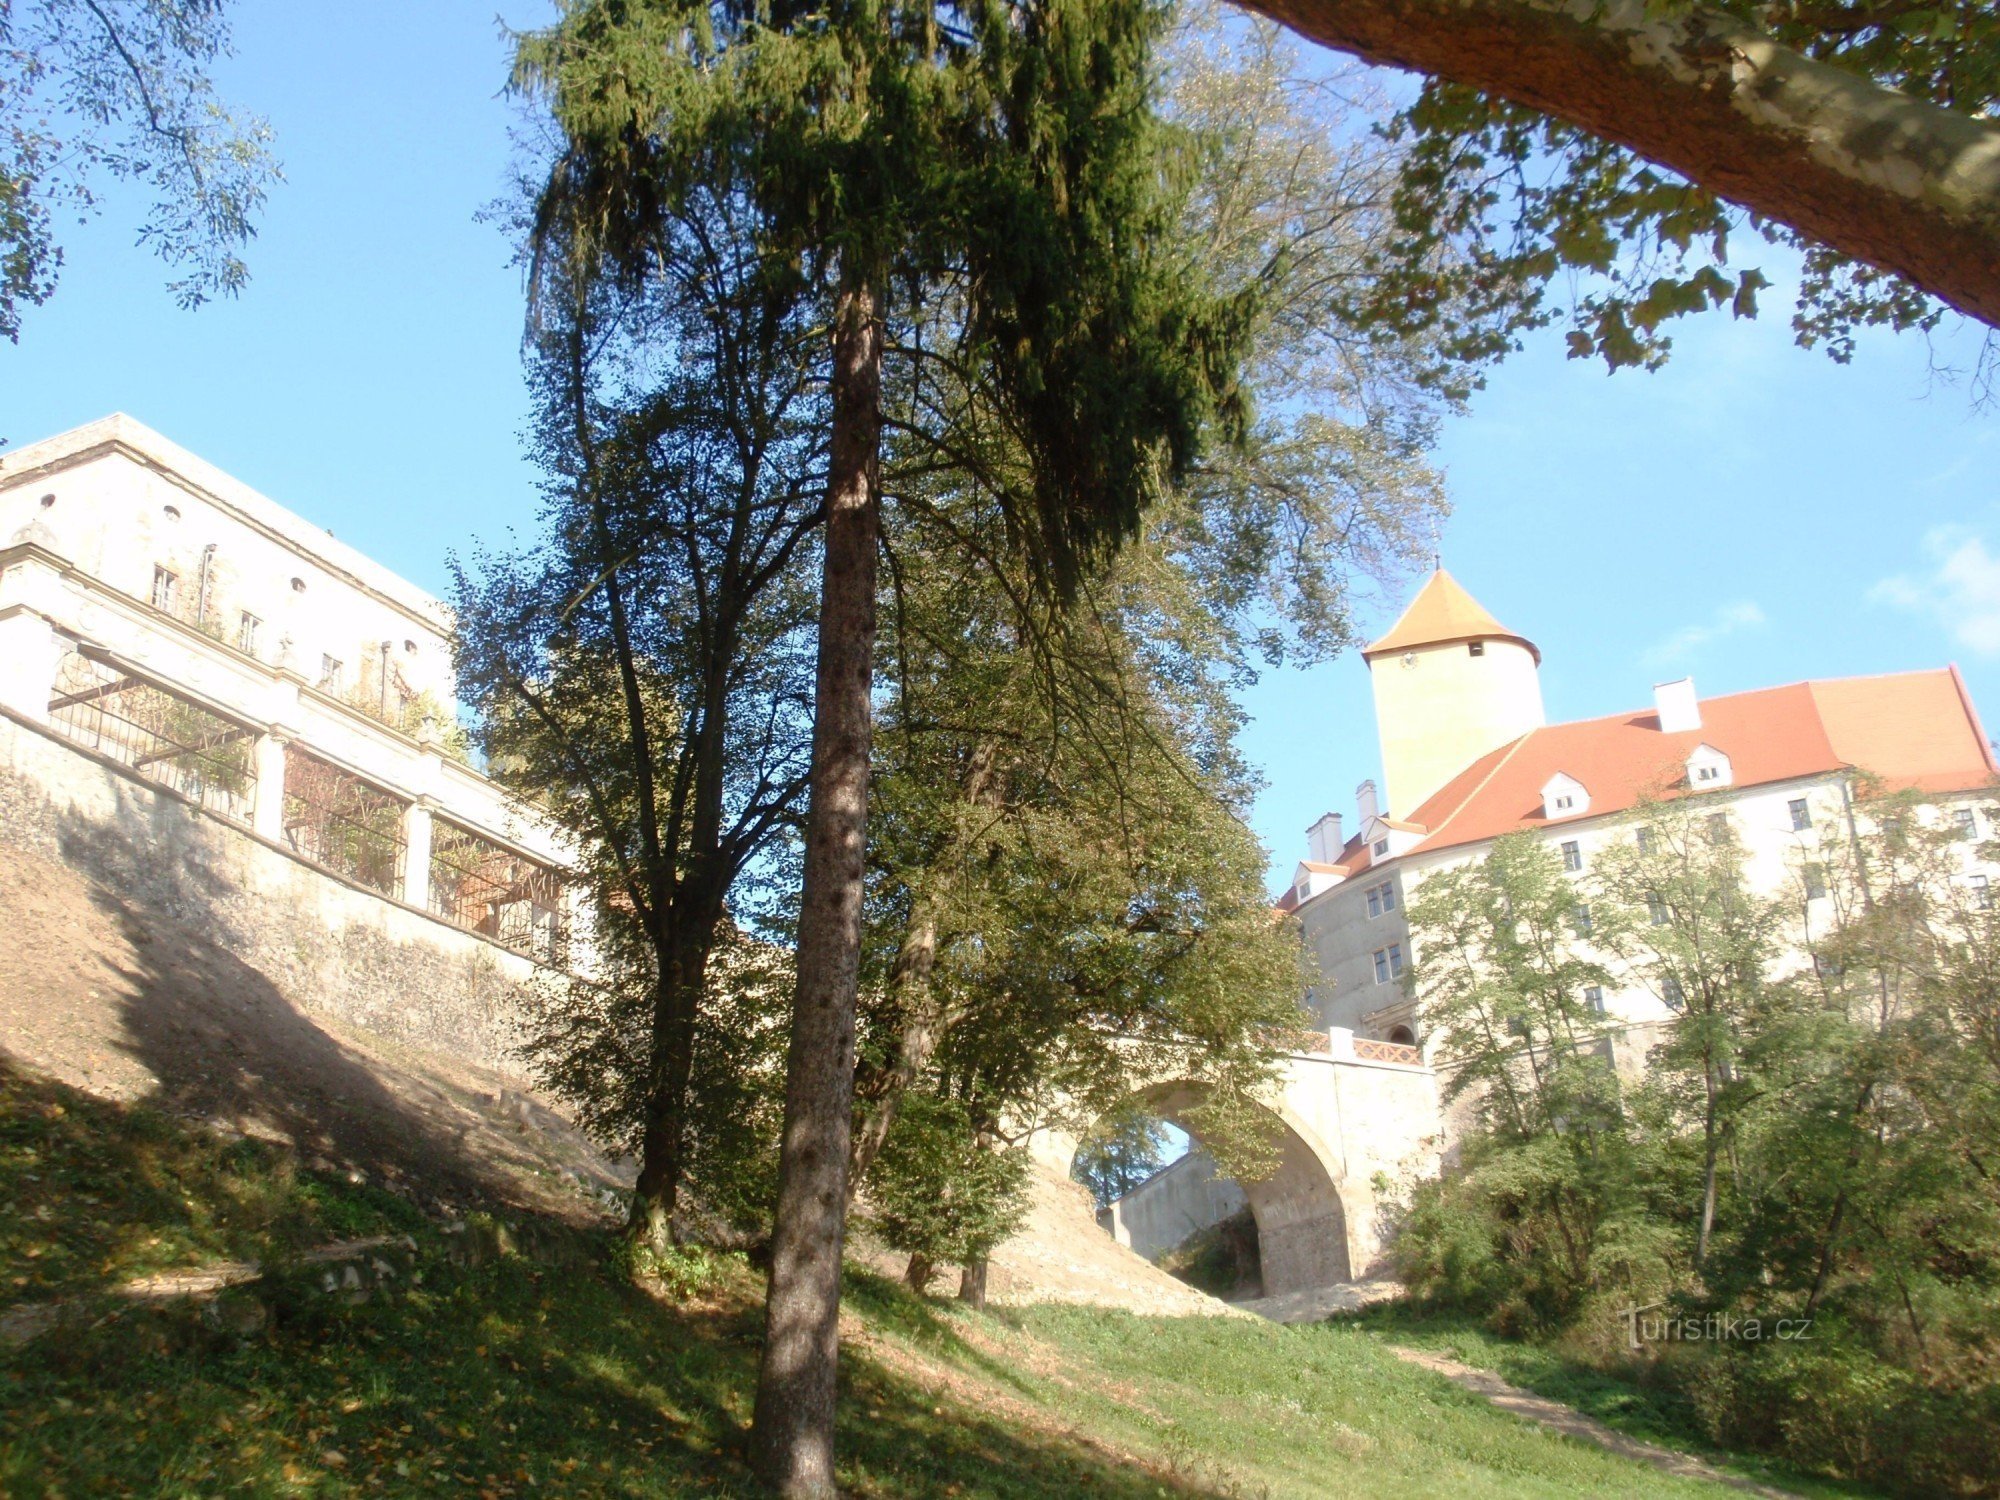 Z zamku Veveří przez tamę z powrotem do Brna